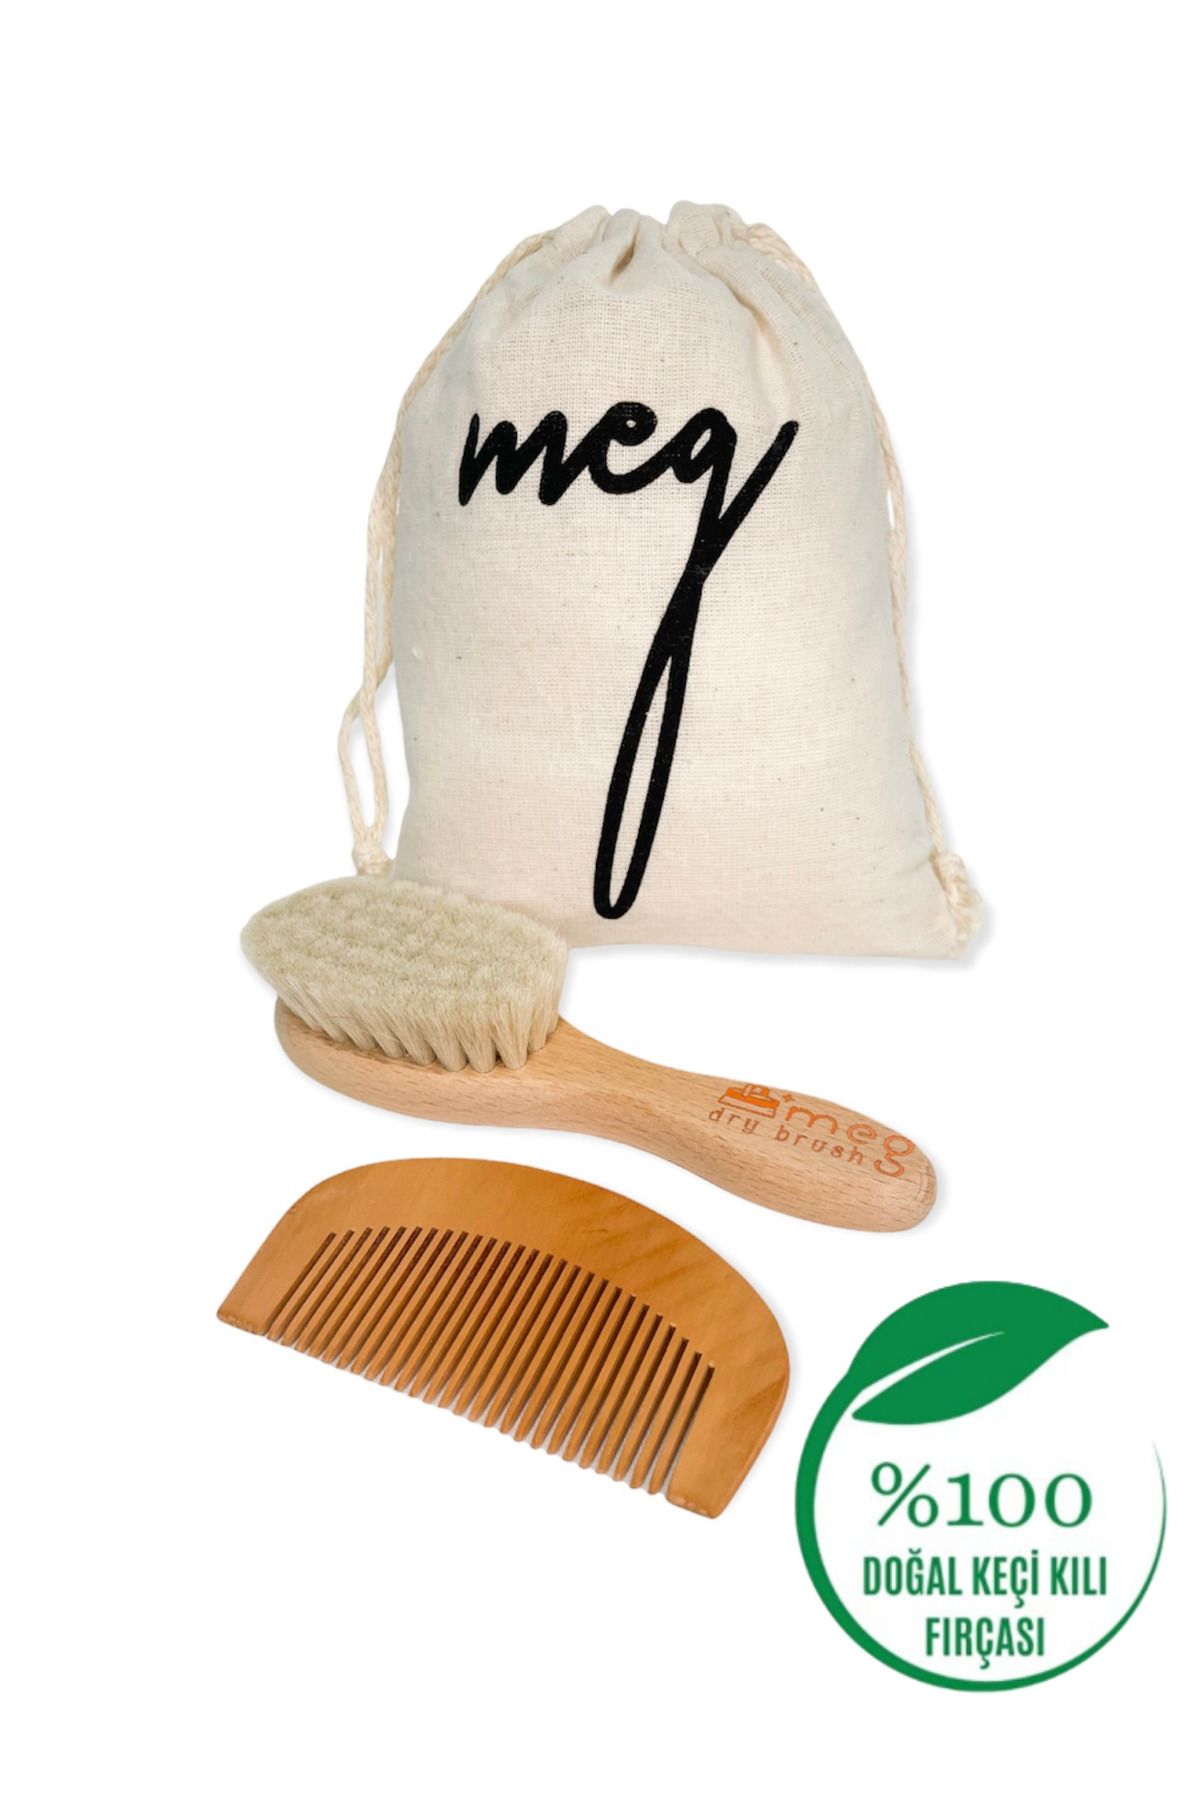 MEG Dry Brush Bebeğiniz Için Doğal Ve Yumuşak Keçi Kılı Fırça Ve Ahşap Tarak Seti - Saklama Keseli Mini Boy